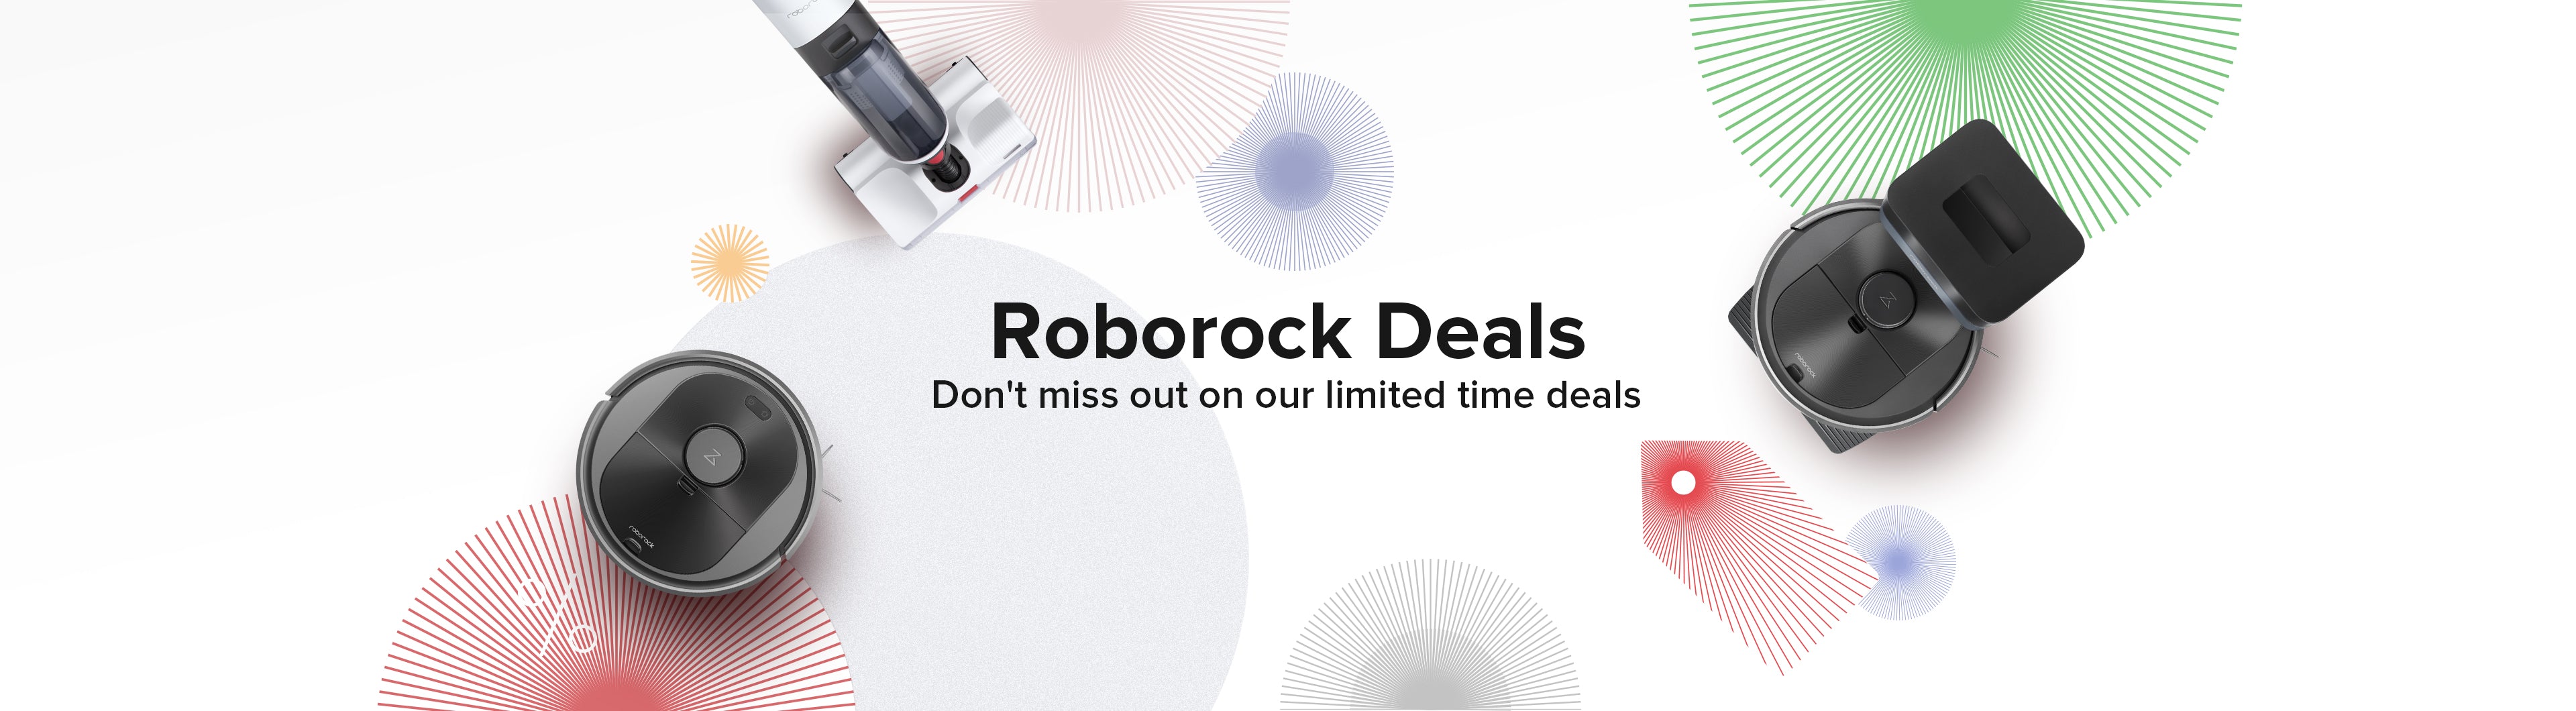 Roborock S8 cuenta con un descuento de 110 euros en su lanzamiento